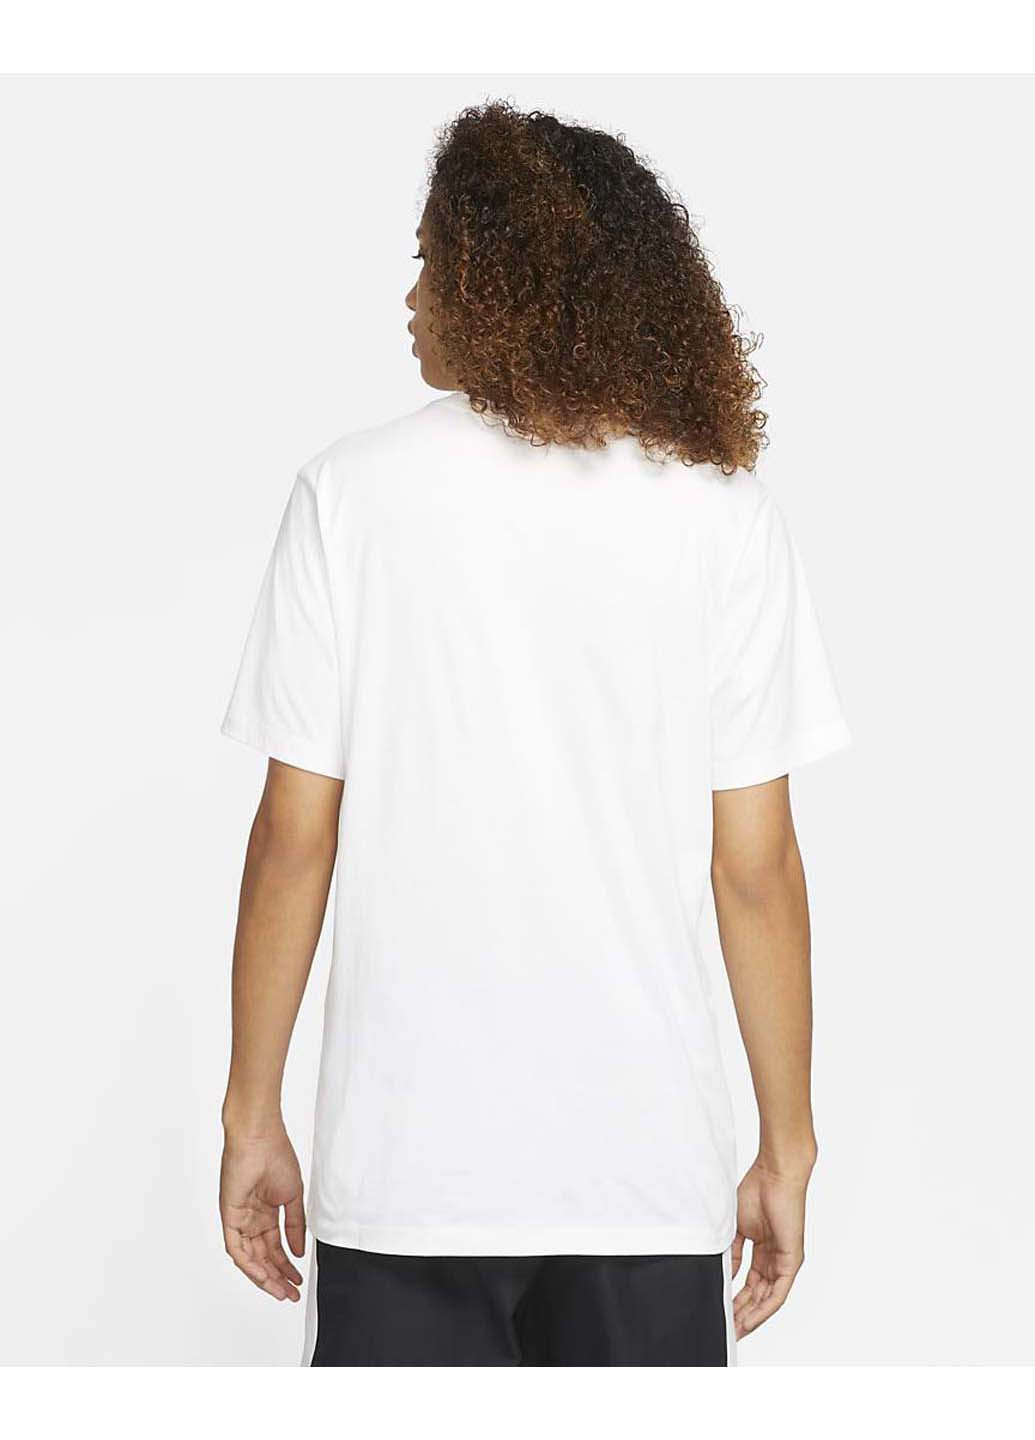 Белая футболка Jordan